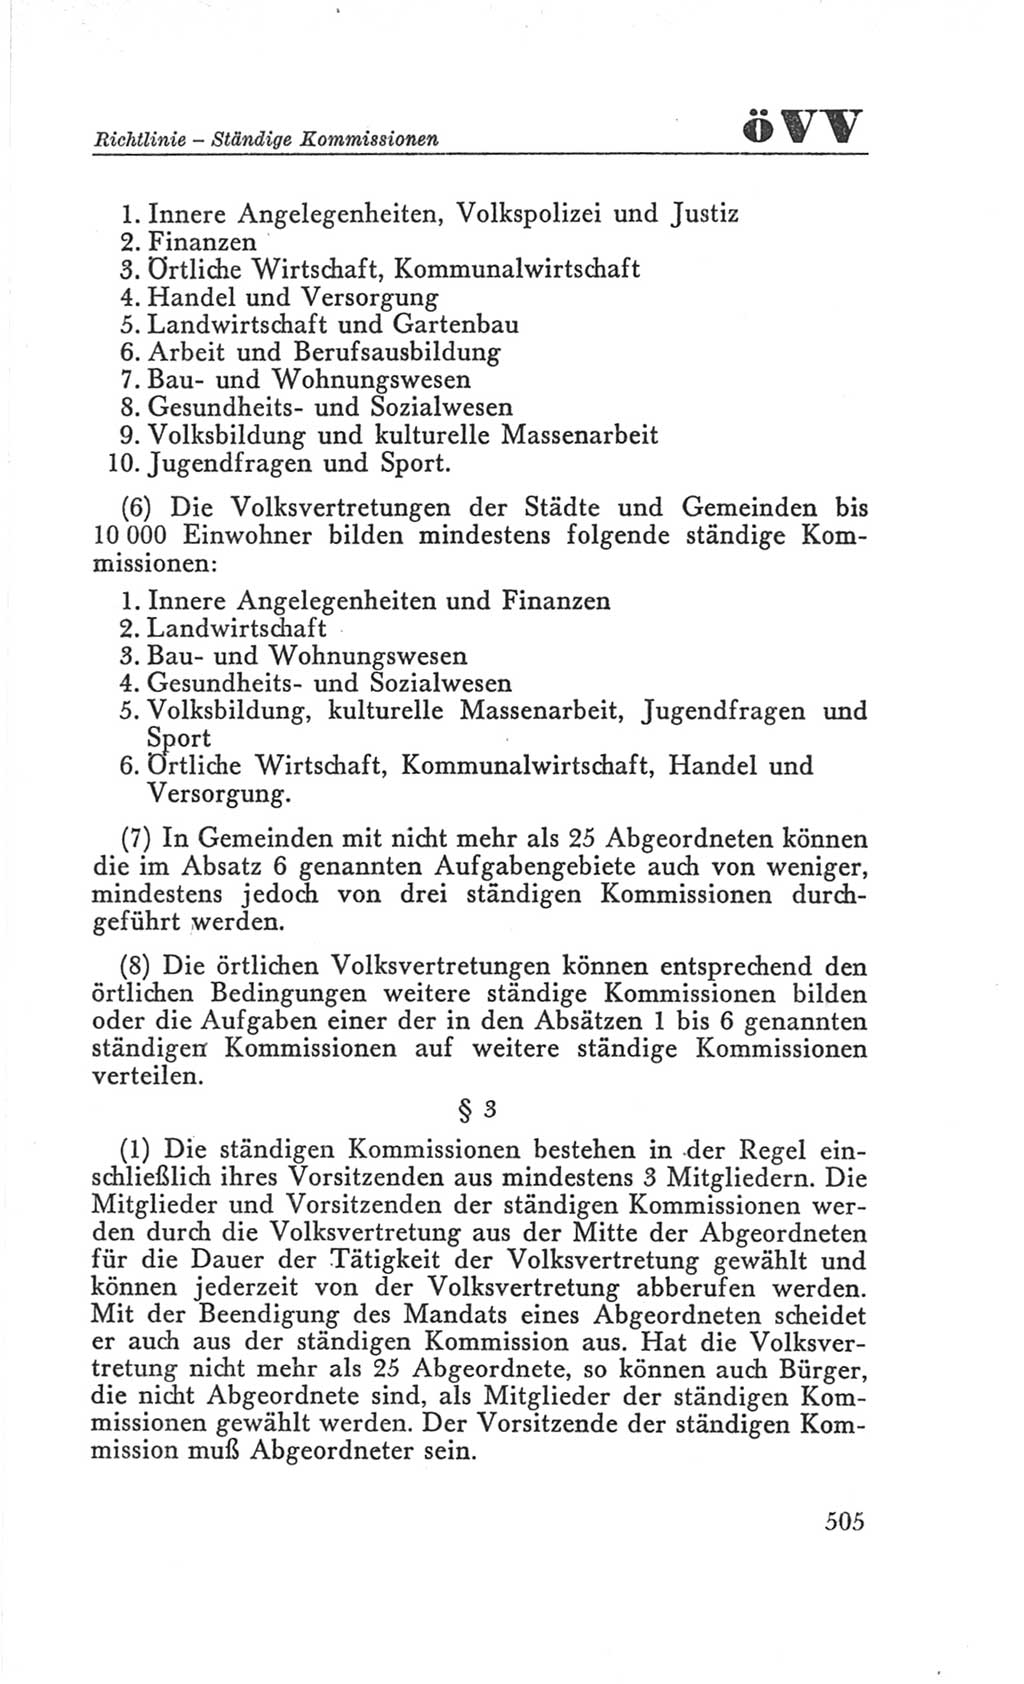 Handbuch der Volkskammer (VK) der Deutschen Demokratischen Republik (DDR), 3. Wahlperiode 1958-1963, Seite 505 (Hdb. VK. DDR 3. WP. 1958-1963, S. 505)